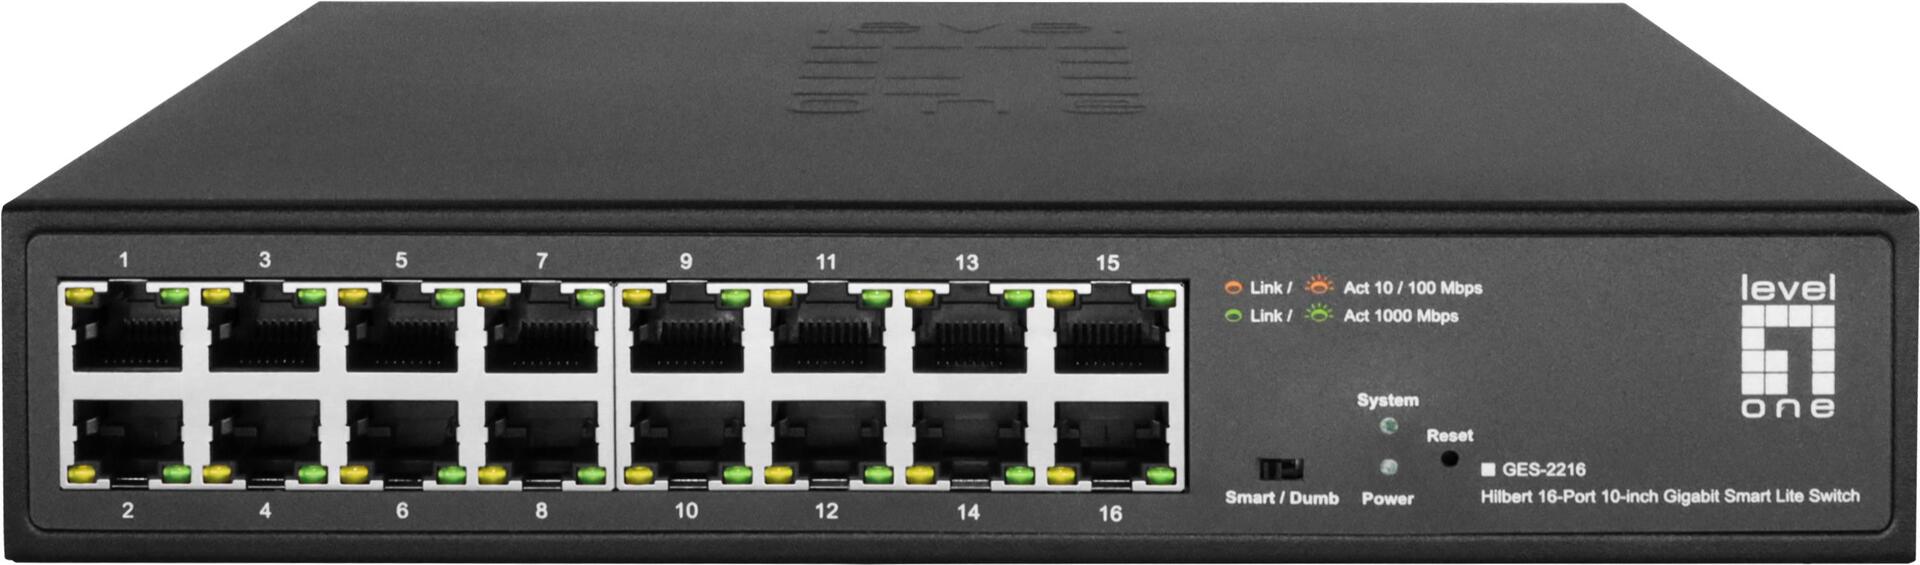 LevelOne GES-2216 Netzwerk-Switch Managed L2 Gigabit Ethernet (10/100/1000) Schwarz (GES-2216)